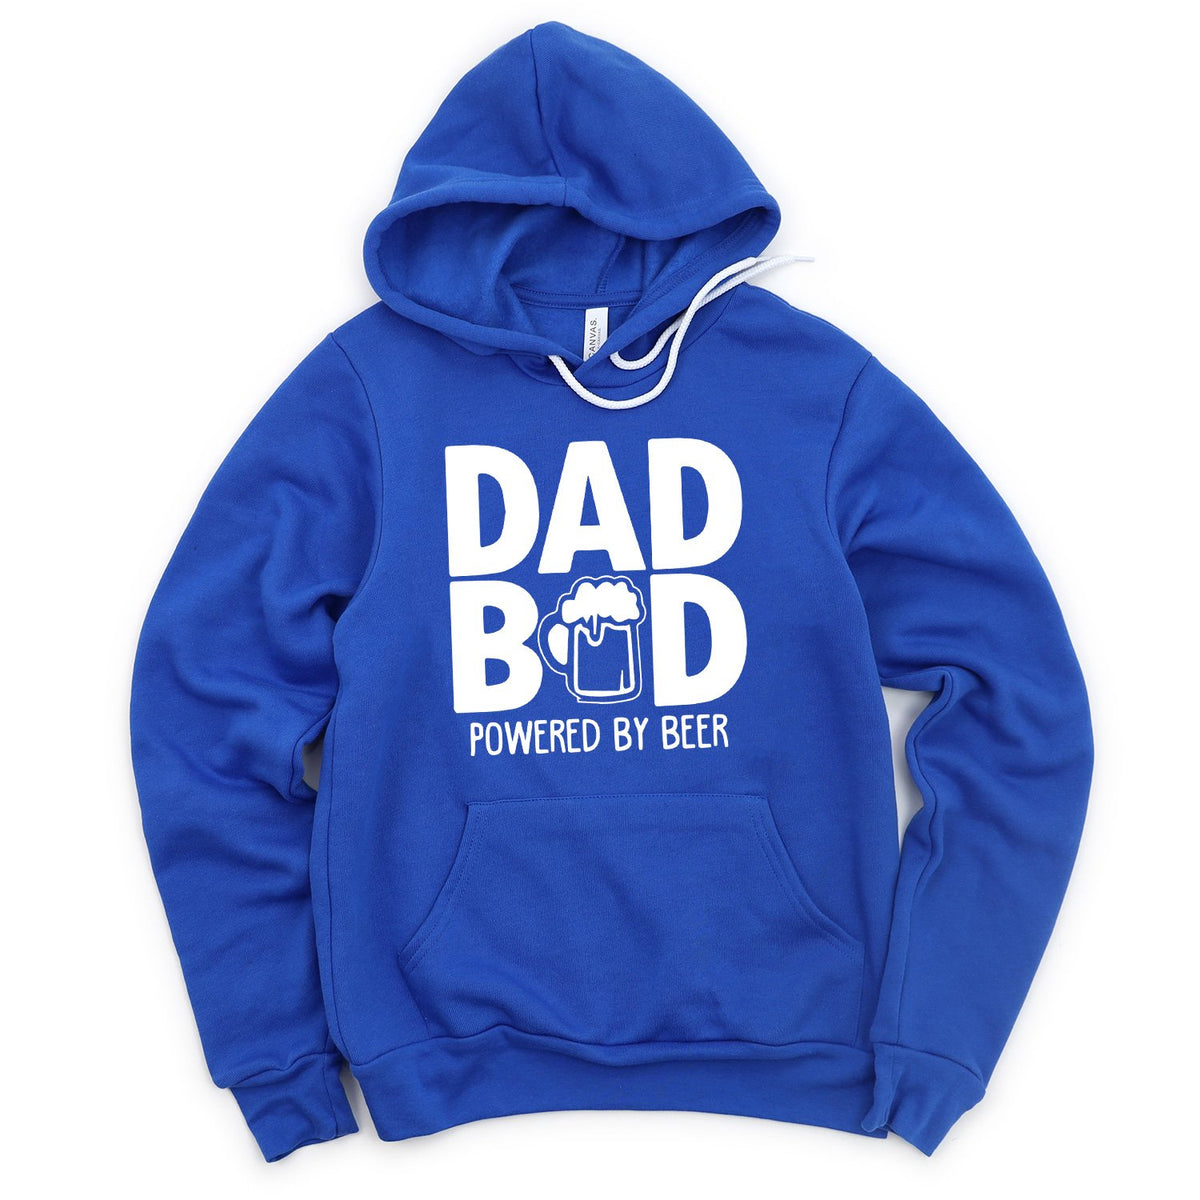 Dad Bod Powered By Beer - Hoodie Sweatshirt